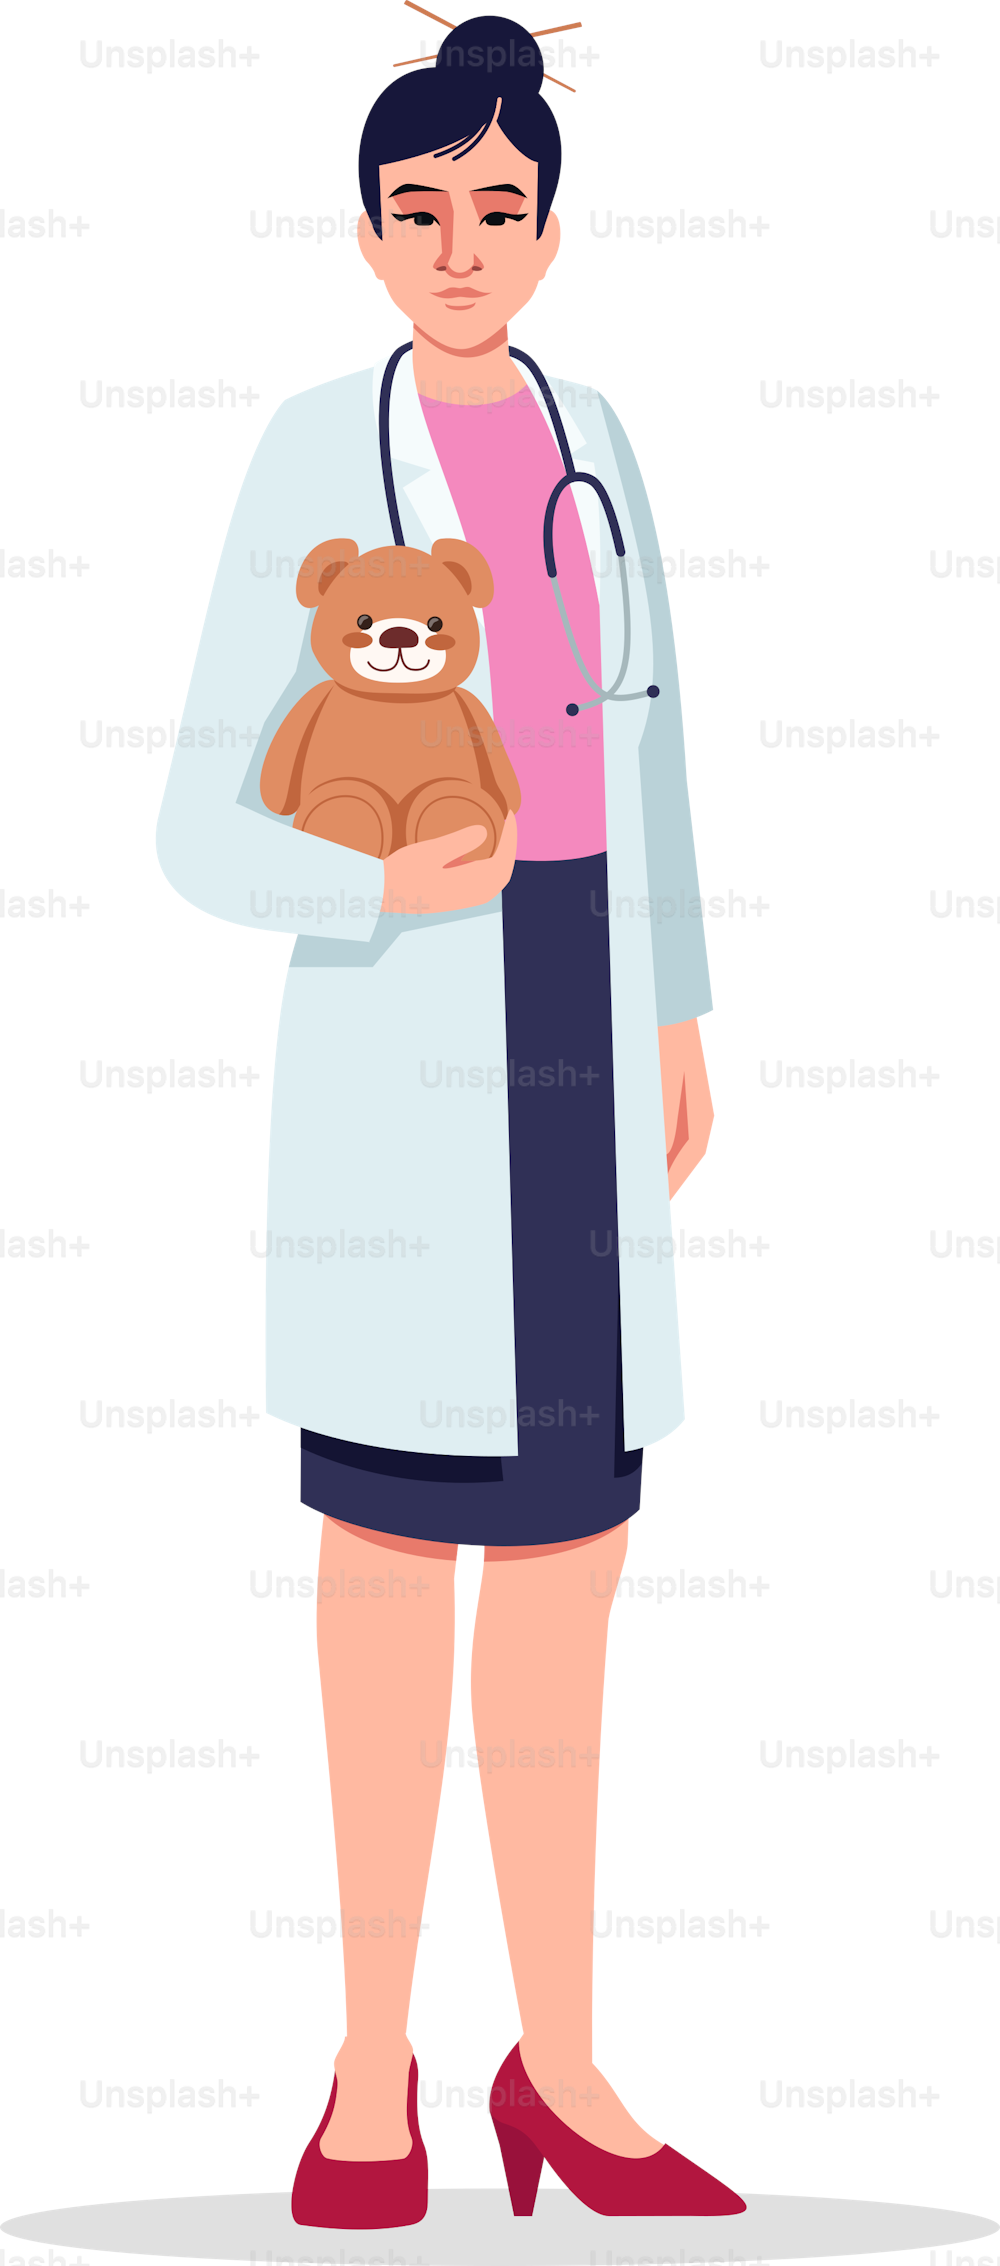 소아과 의사 세미 플랫 RGB 컬러 벡터 그림입니다. 어린이 관리 의사. 의료진. 소아과 의사로 일하는 젊은 중국 여성은 흰색 배경에 고립된 만화 캐릭터를 가지고 있다